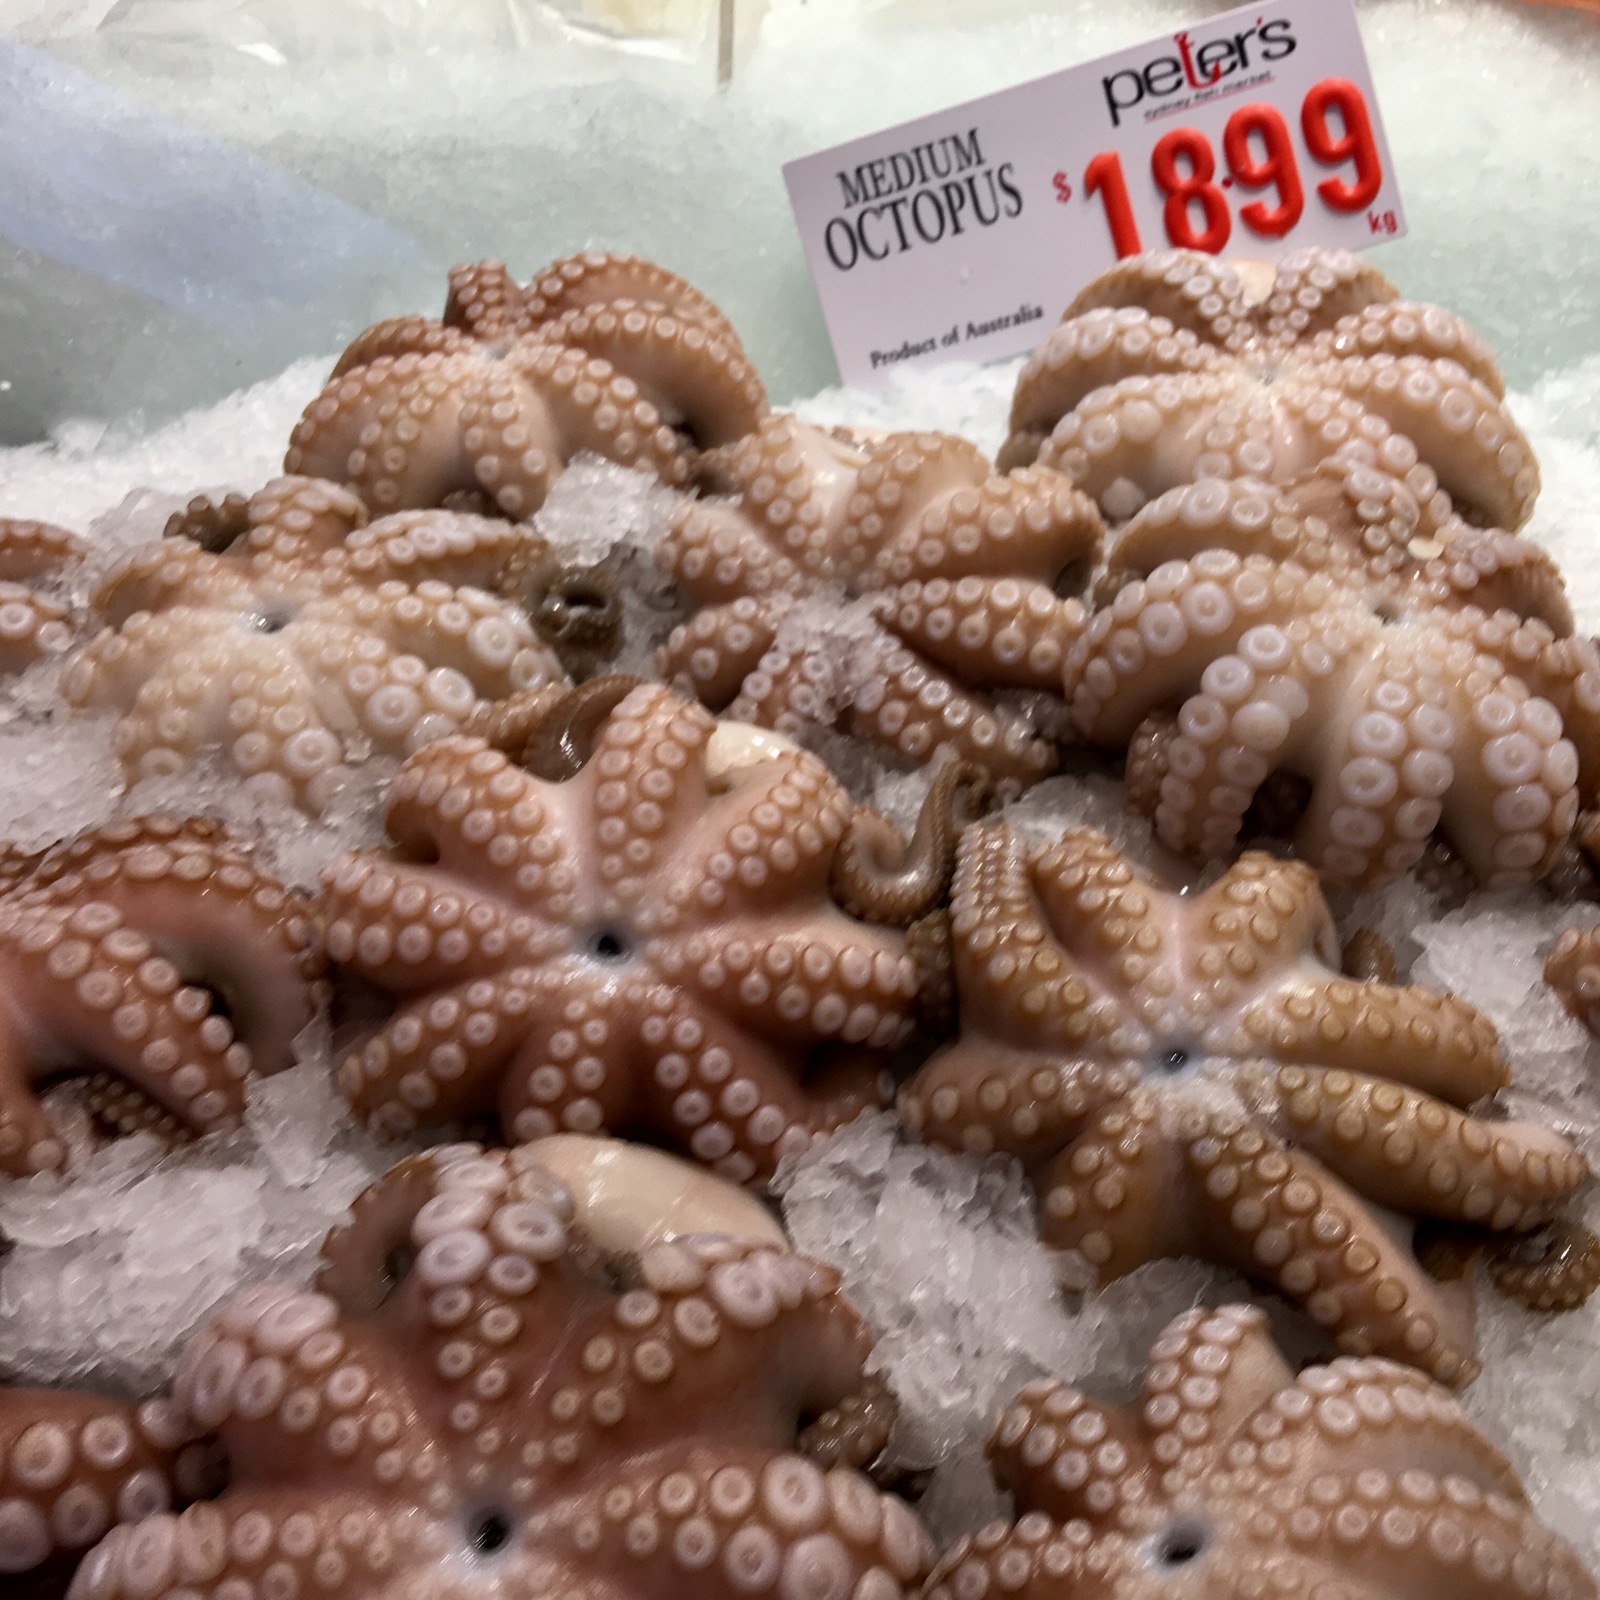 sydney-fish-market_medium-octopus